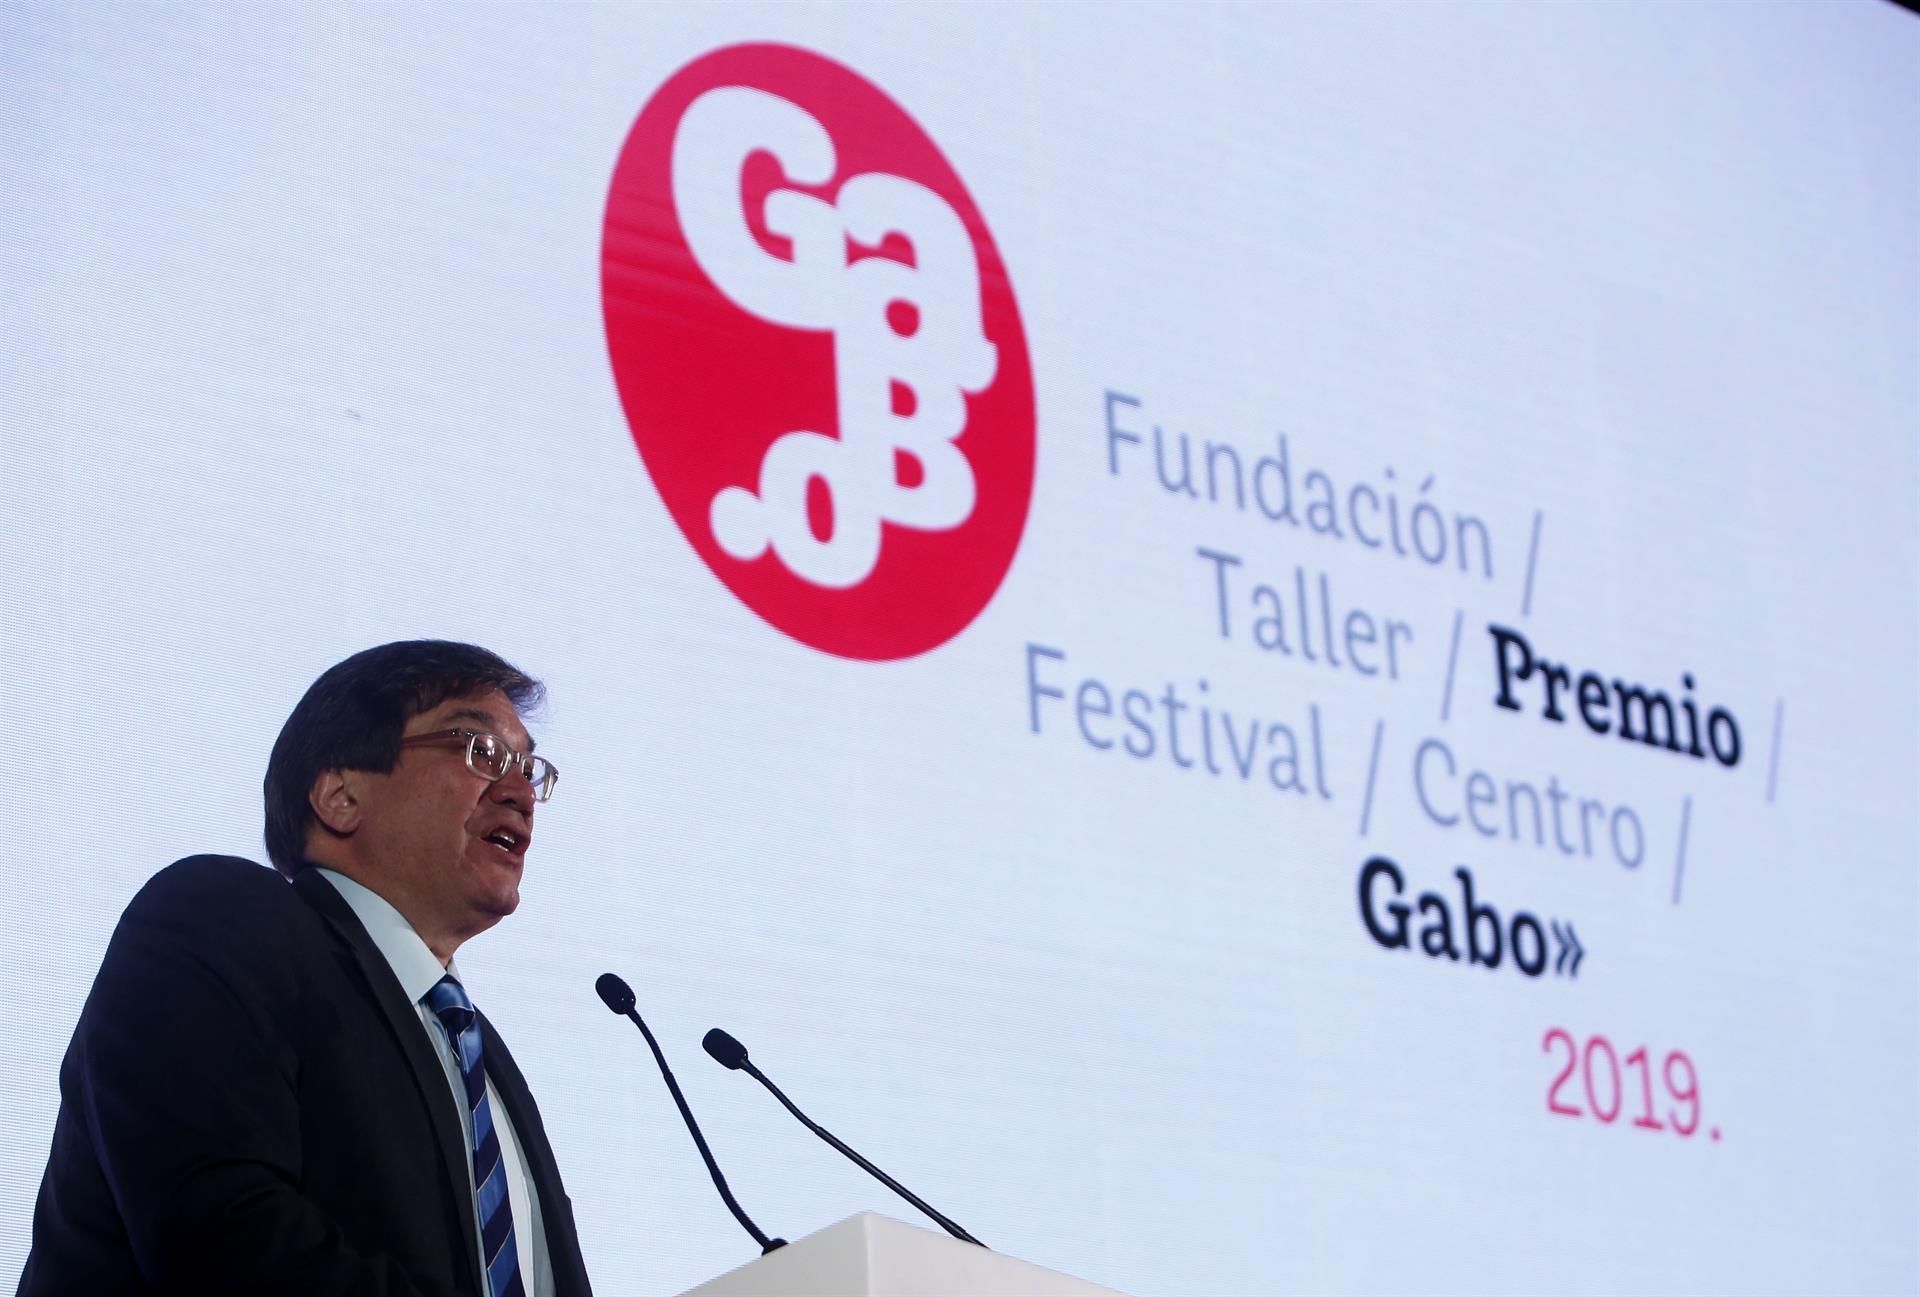 El director general de la Fundación Gabo, Jaime Abello, en una fotografía de archivo. EFE/Luis Eduardo Noriega A.